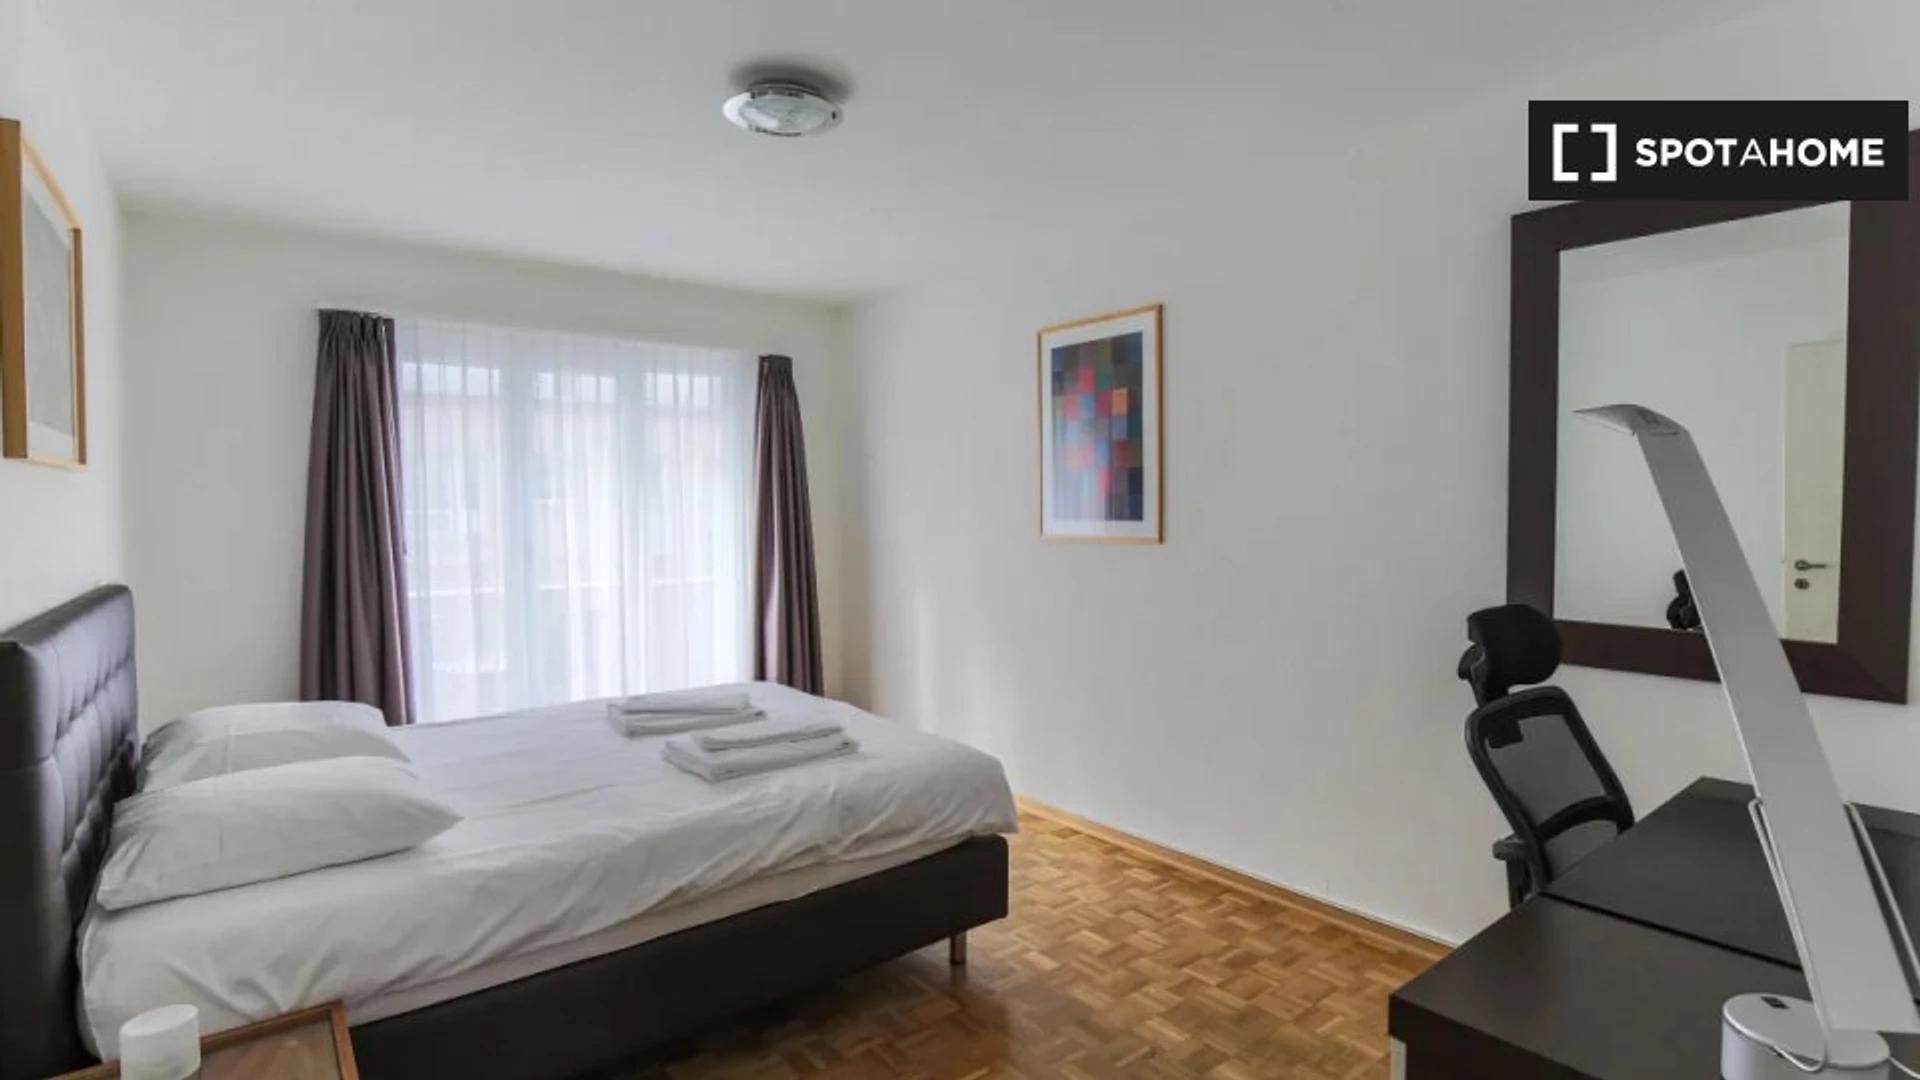 Moderne und helle Wohnung in Zurich